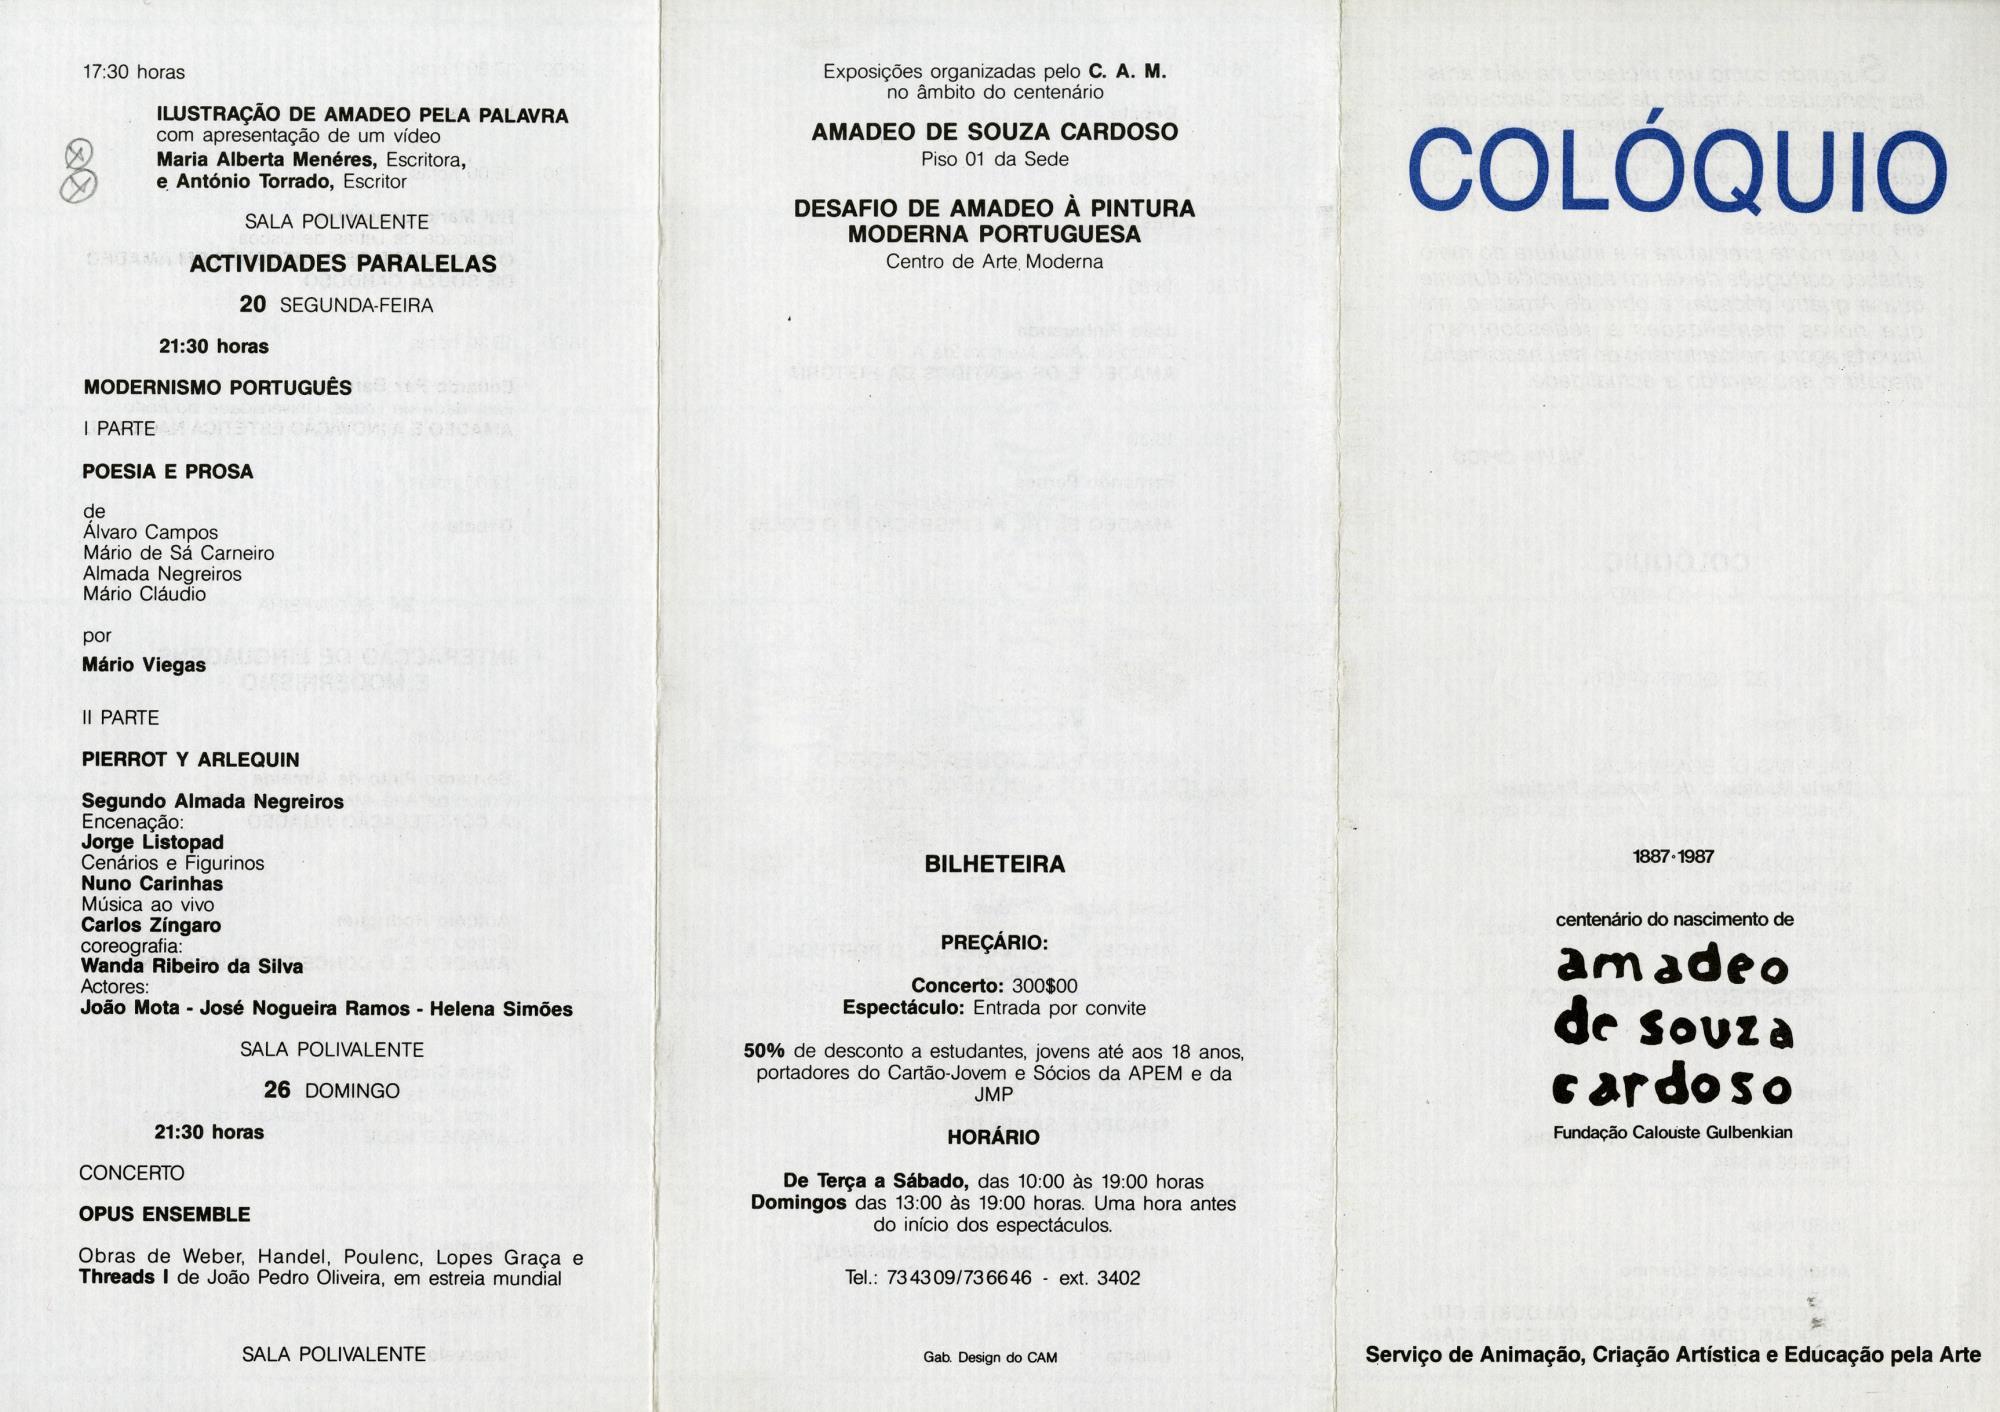 Centenário do Nascimento de Amadeo de Souza-Cardoso, 1887 – 1987 [colóquio e eventos associados]